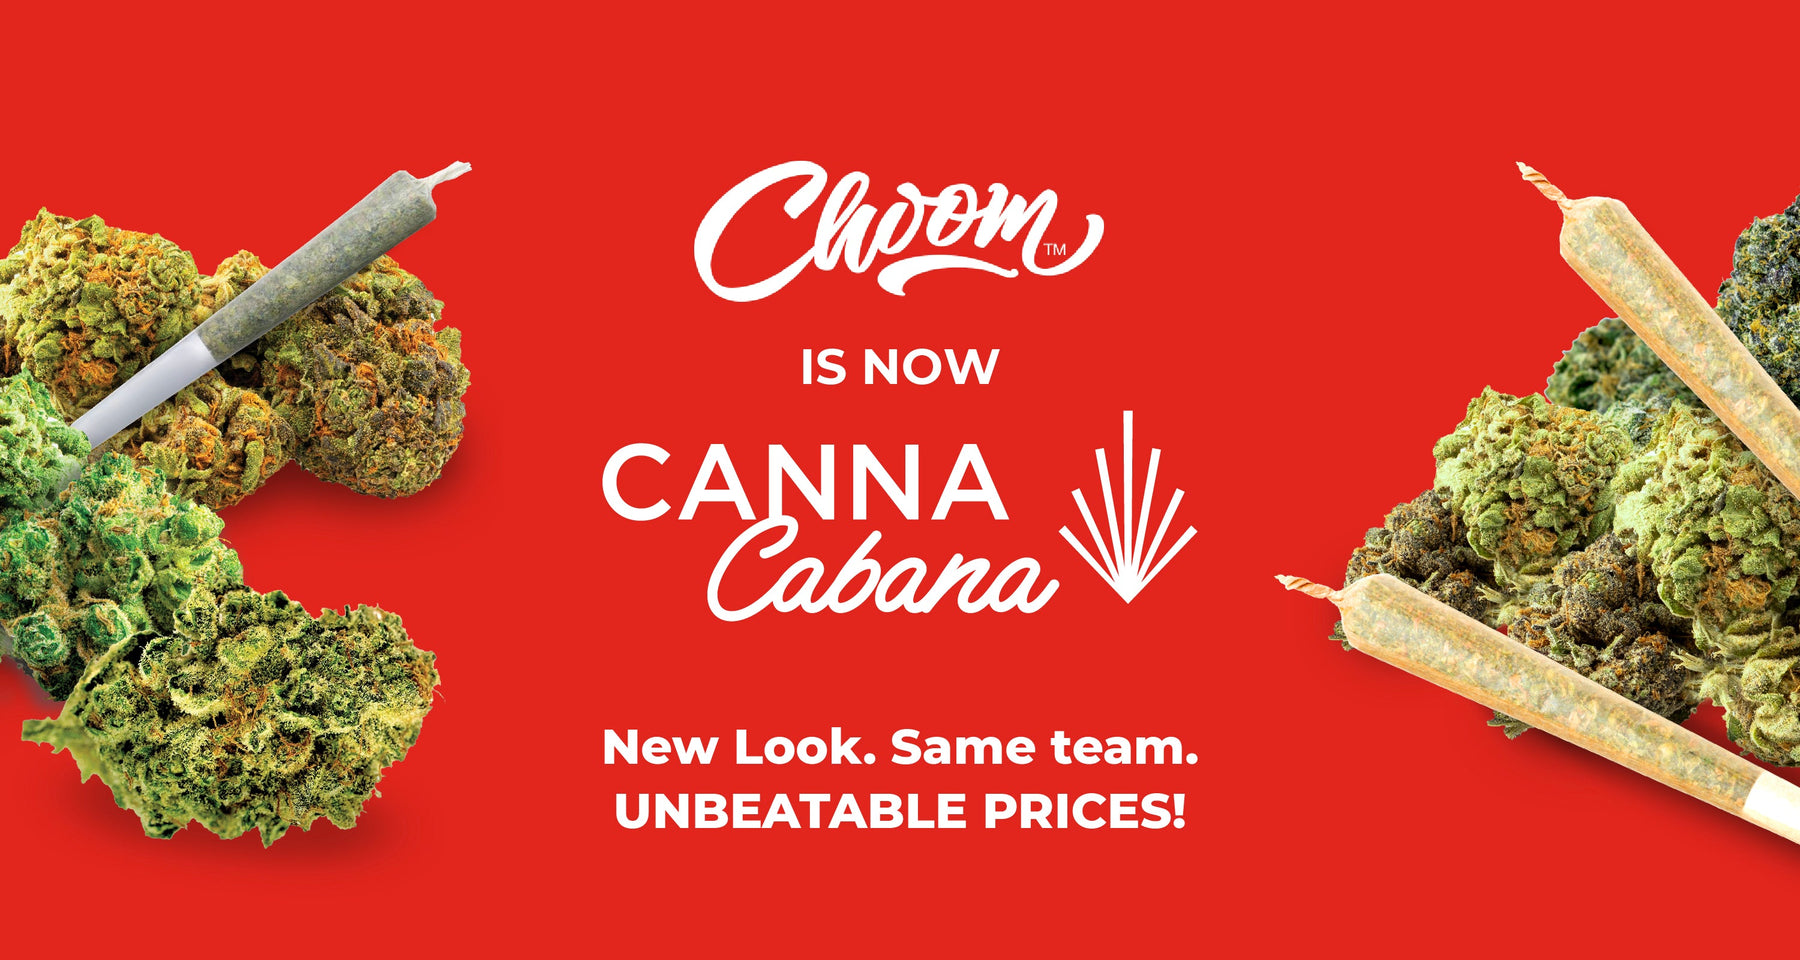 Welcome to Canna Cabana, Choom!